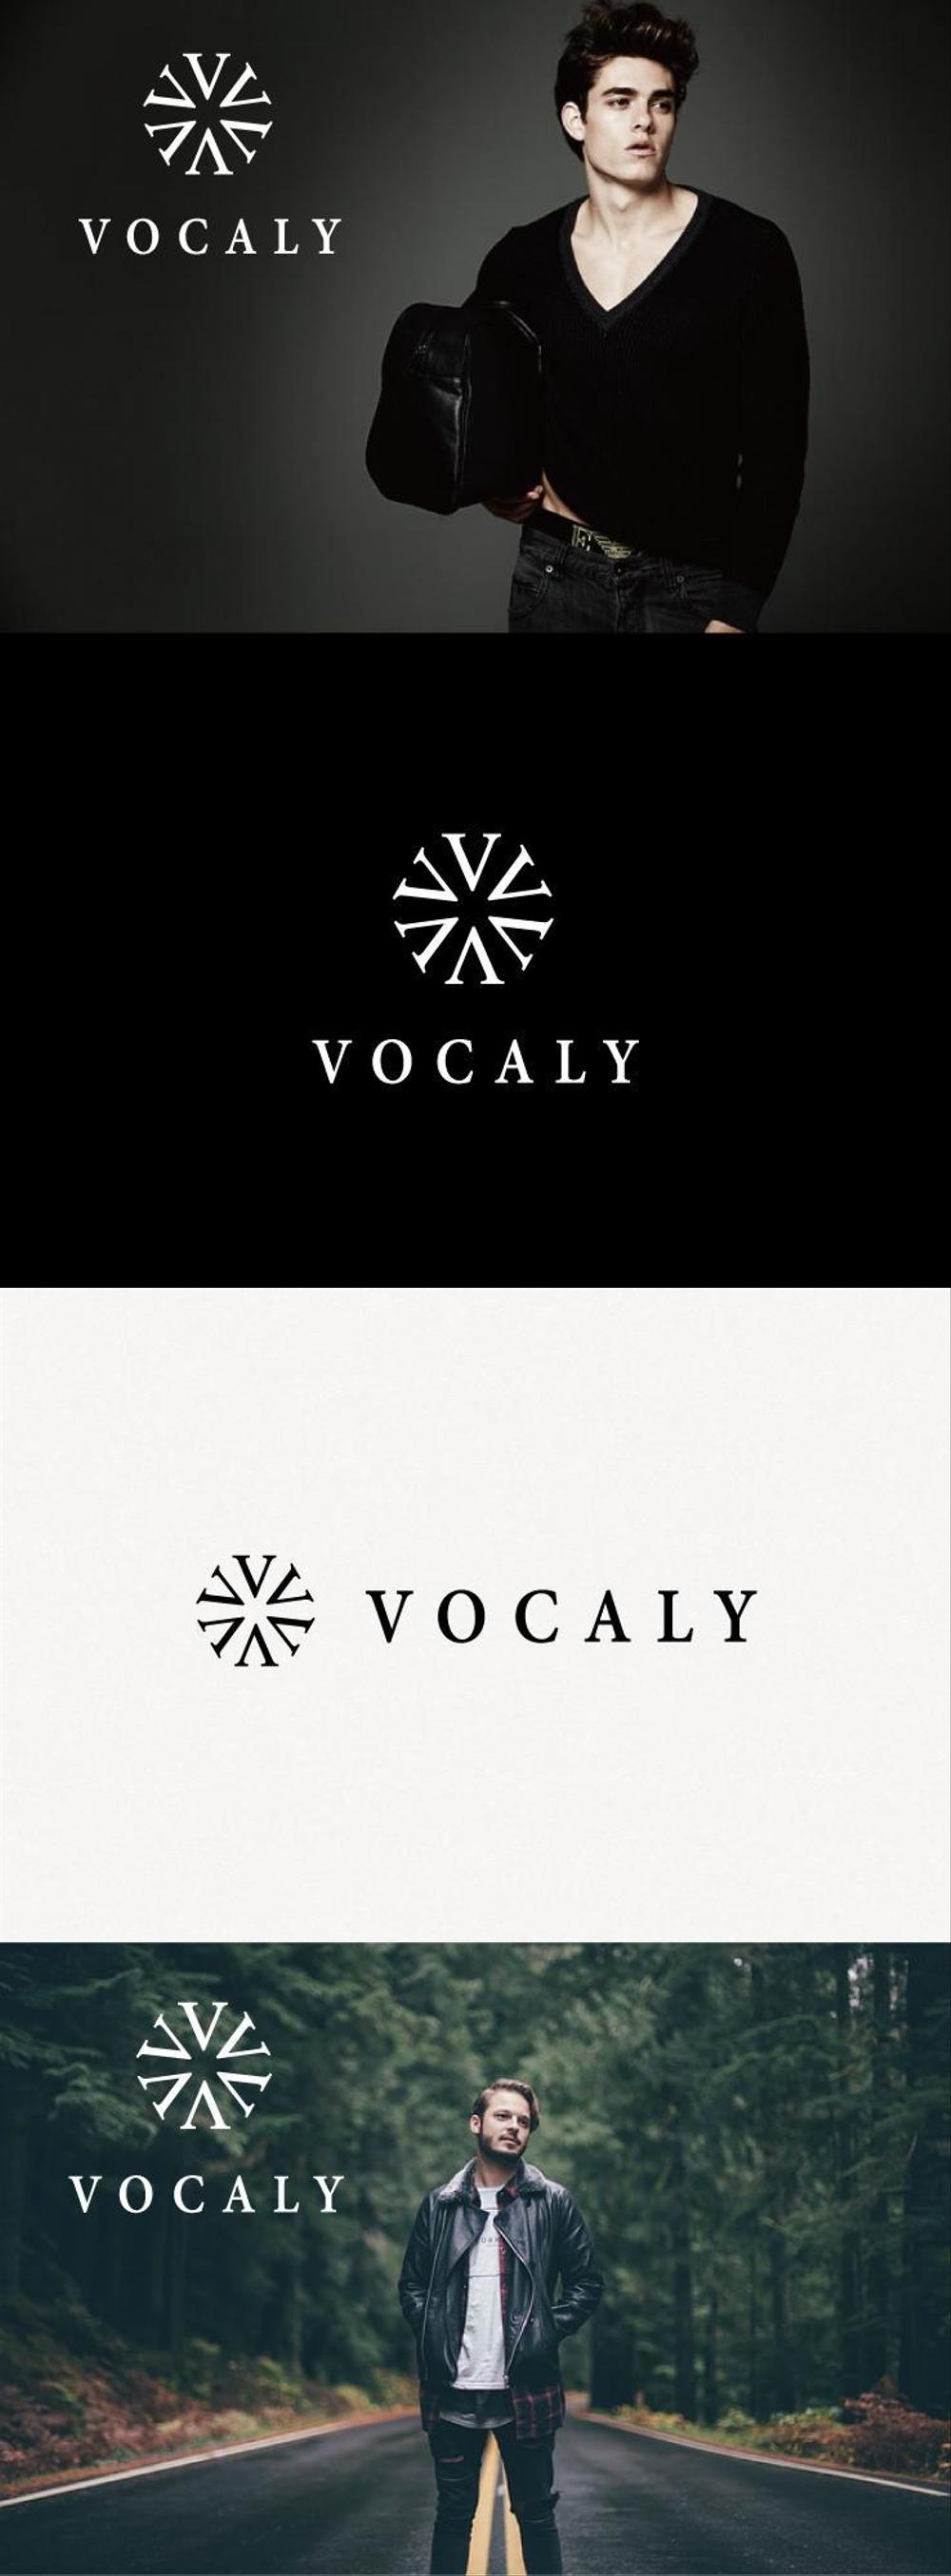 アクセサリーショップサイト「Vocaly」のロゴ